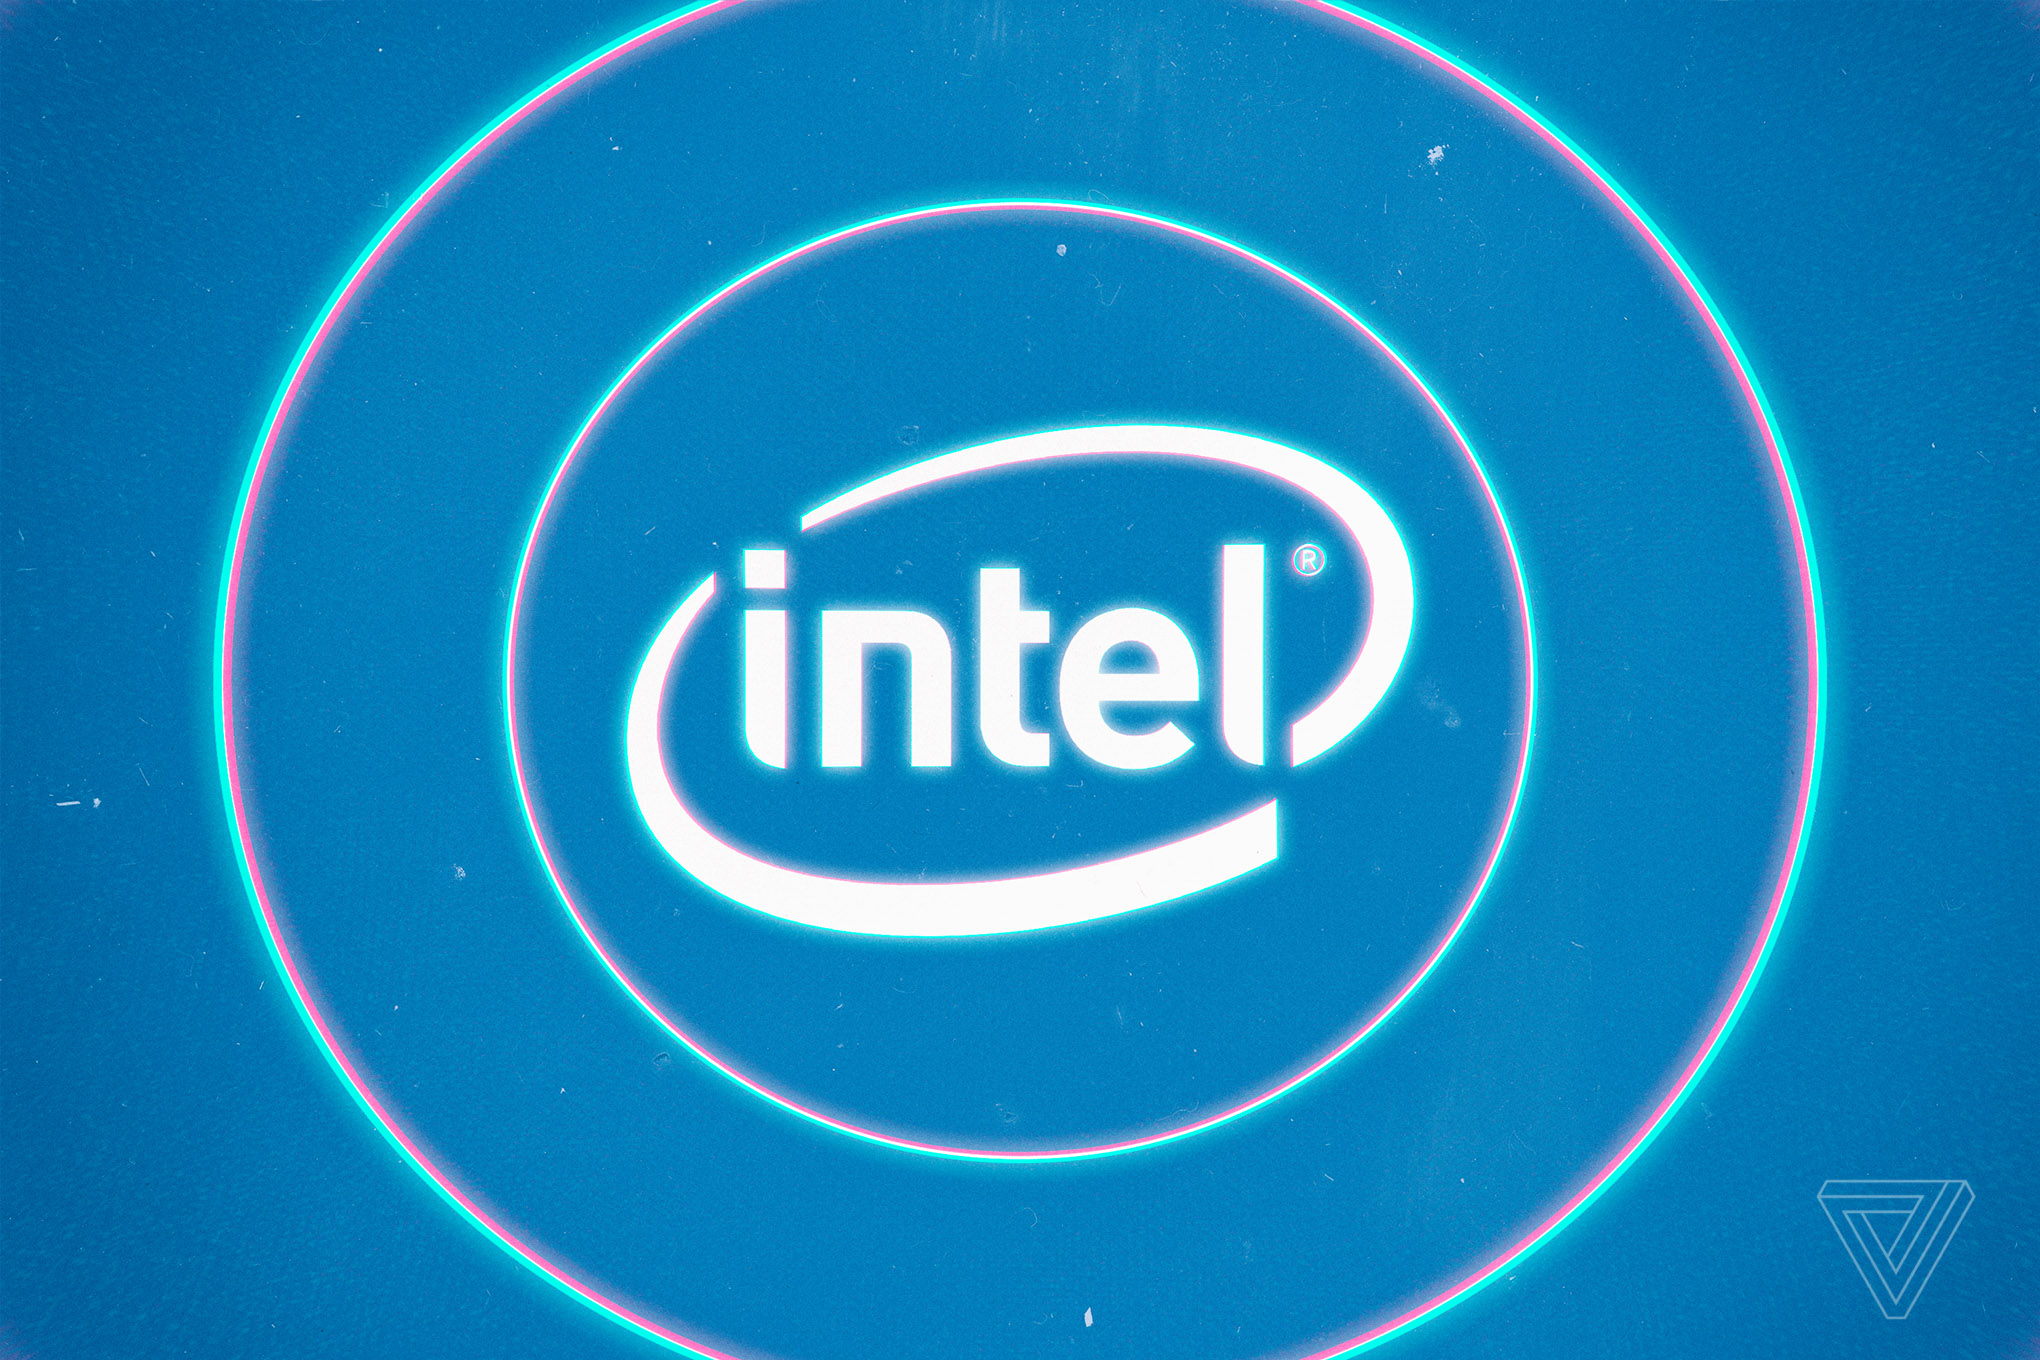 Intel giới thiệu Whiskey Lake và Amber Lake, có thể là chuyên dụng cho Macbook và Macbook Air